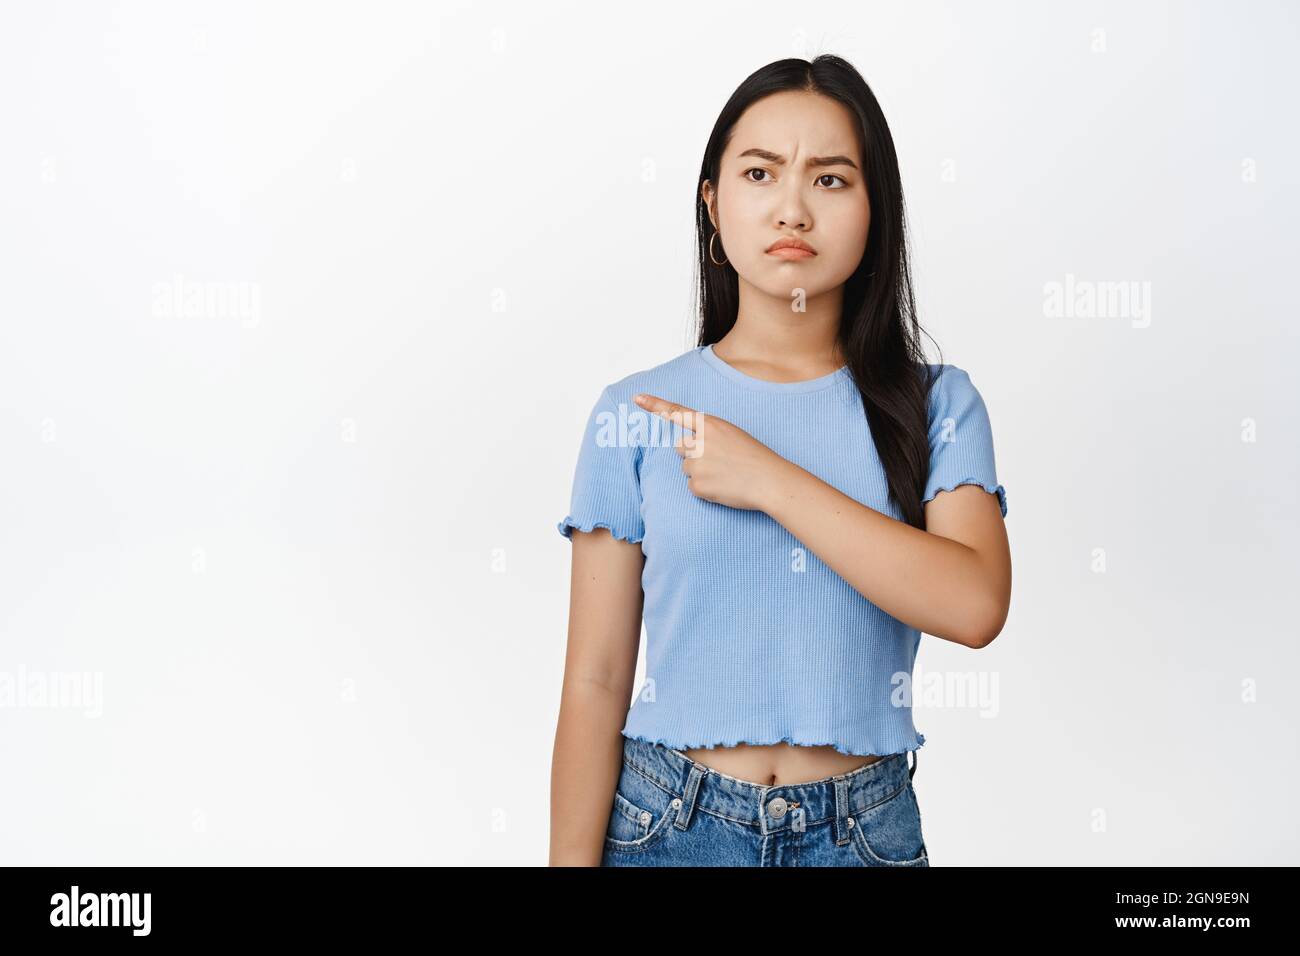 Une jeune fille asiatique en colère pointant vers la gauche avec un visage frogné et grognant, se lasser et se tenir debout sur un fond blanc Banque D'Images